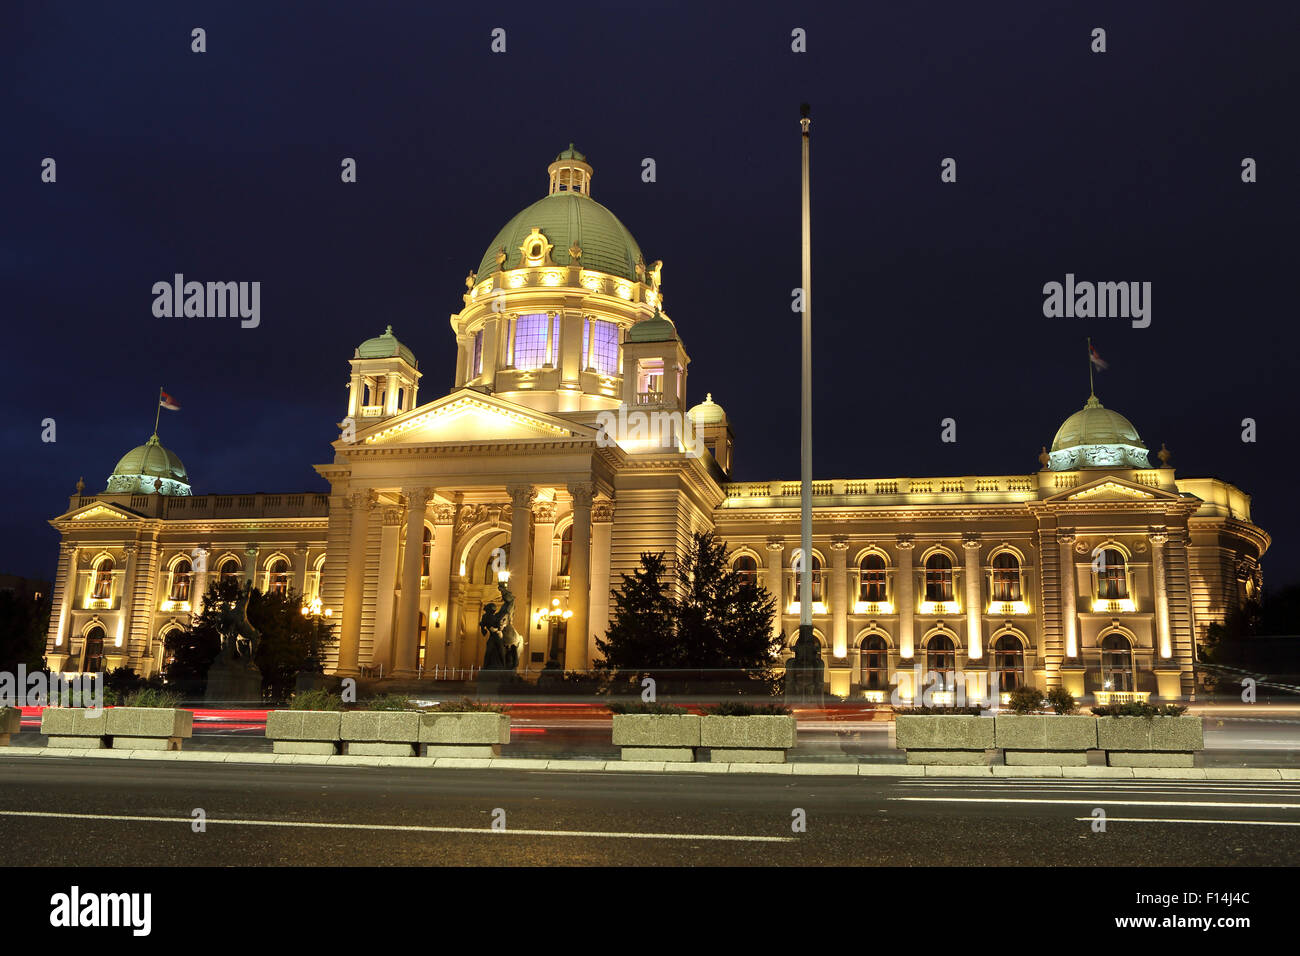 Das serbische Parlament Gebäude in Belgrad, Serbien. Das Gebäude ist beleuchtet. Stockfoto